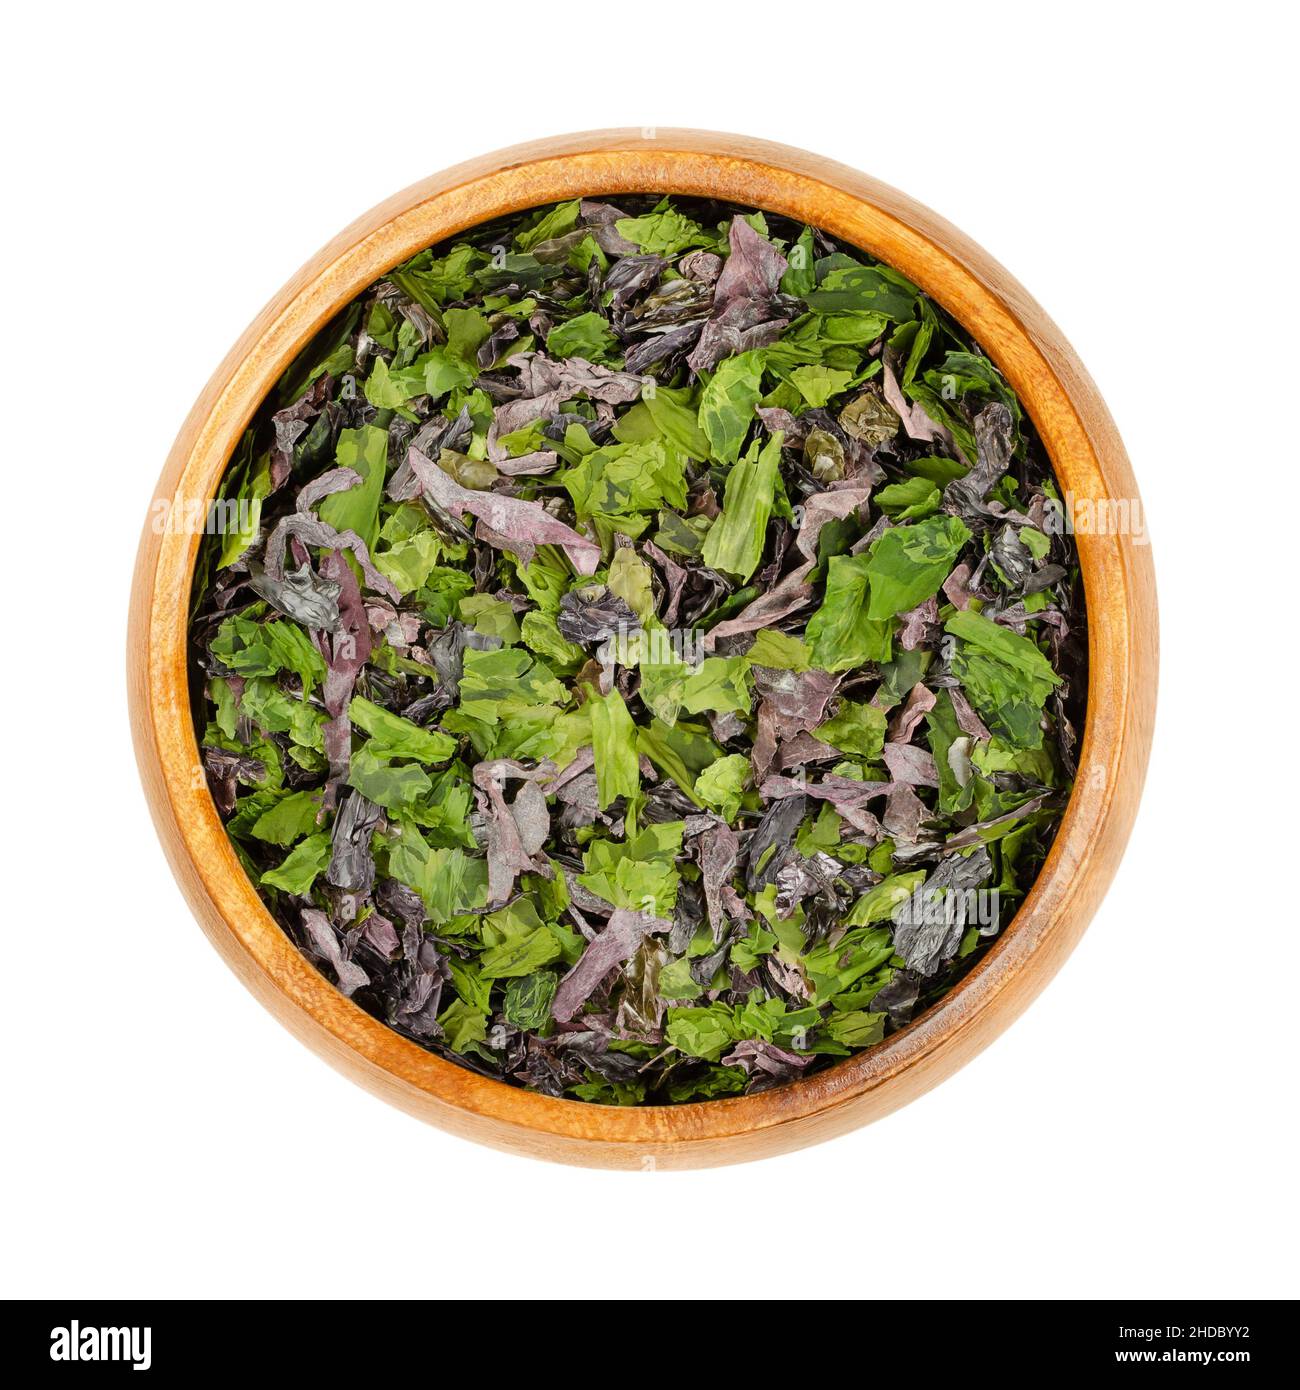 Seetang-Flocken in einer Holzschüssel. Mischung aus Dulse (Palmaria palmata), Meersalat (Ulva lactuca) und Nori. Getrocknete Meeresalgen, reich an natürlichem Jod. Stockfoto